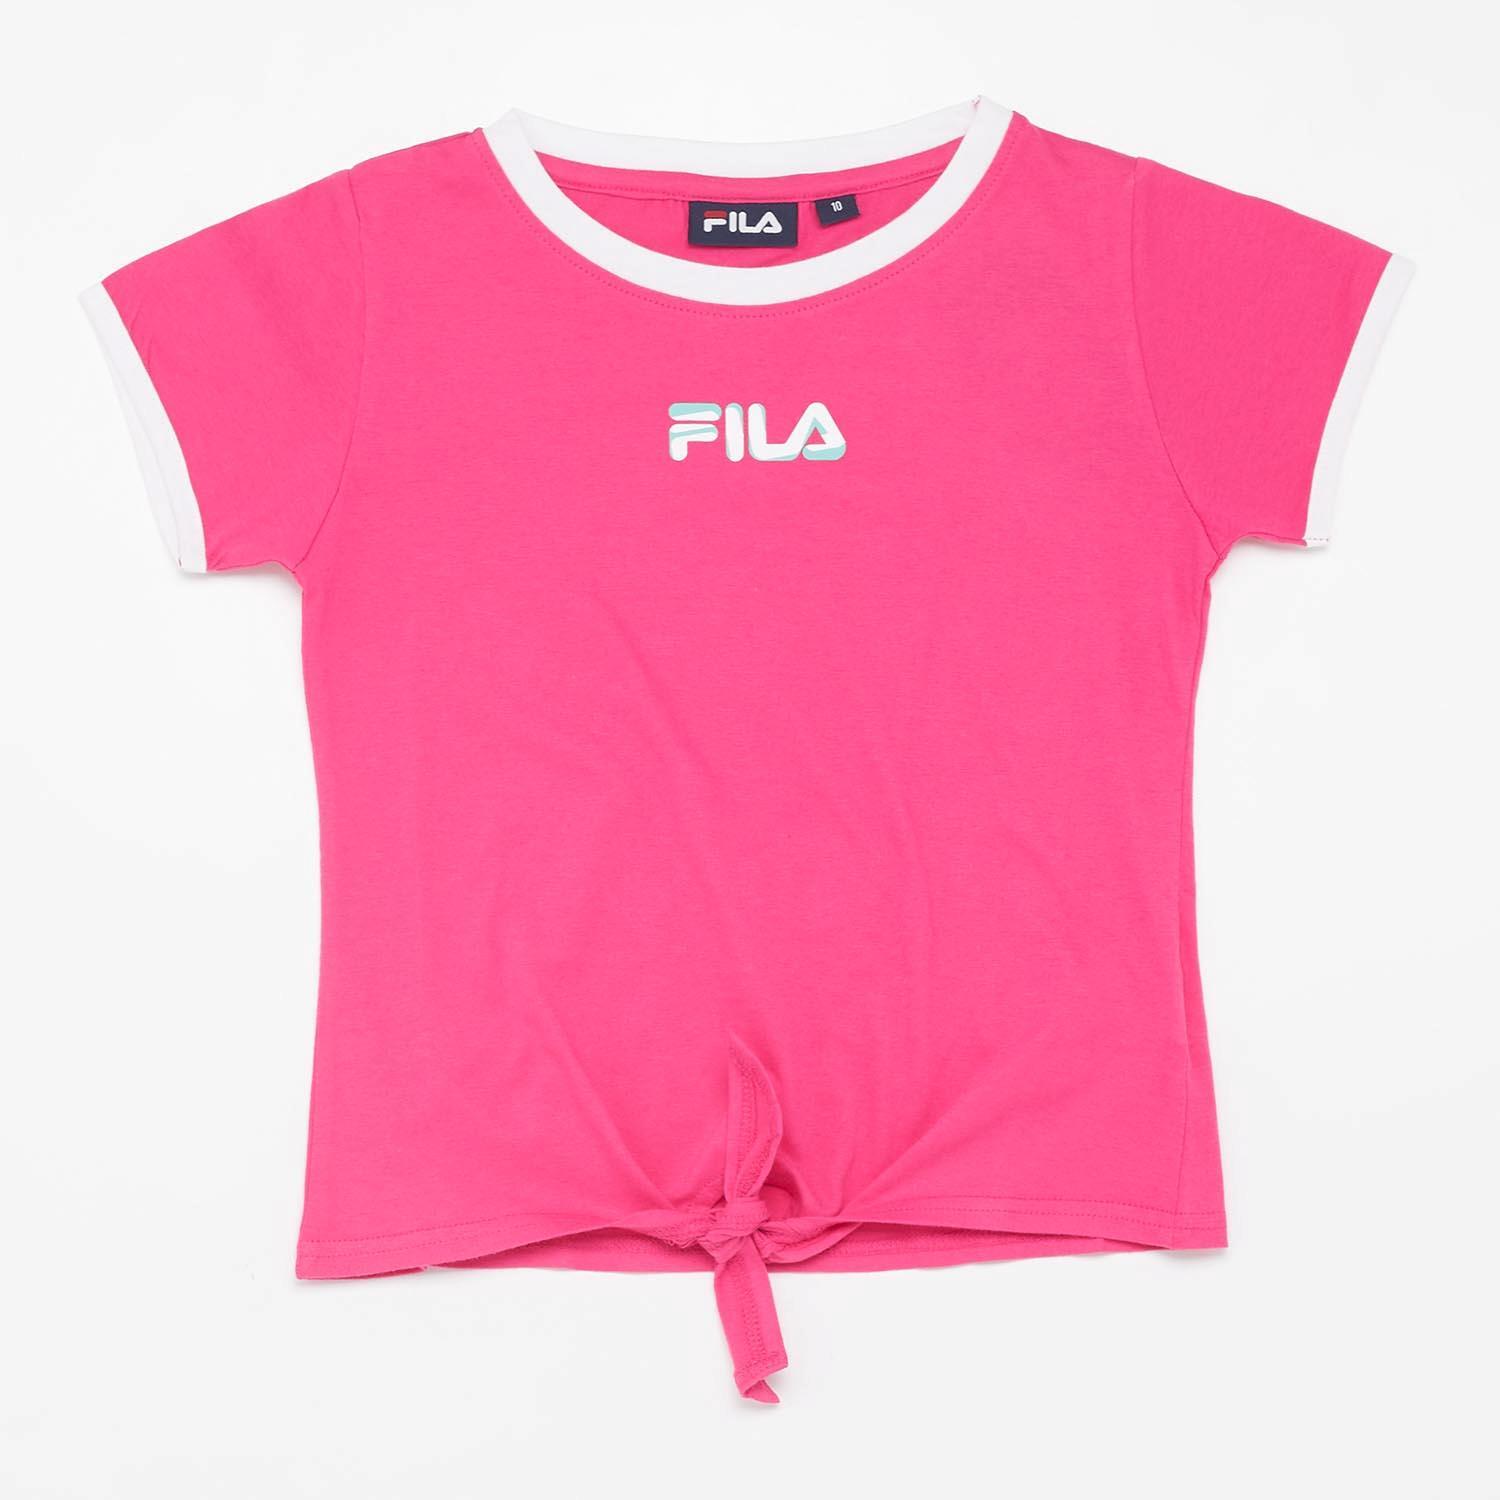 Fila Zendaya Roze T-shirt Meisjes